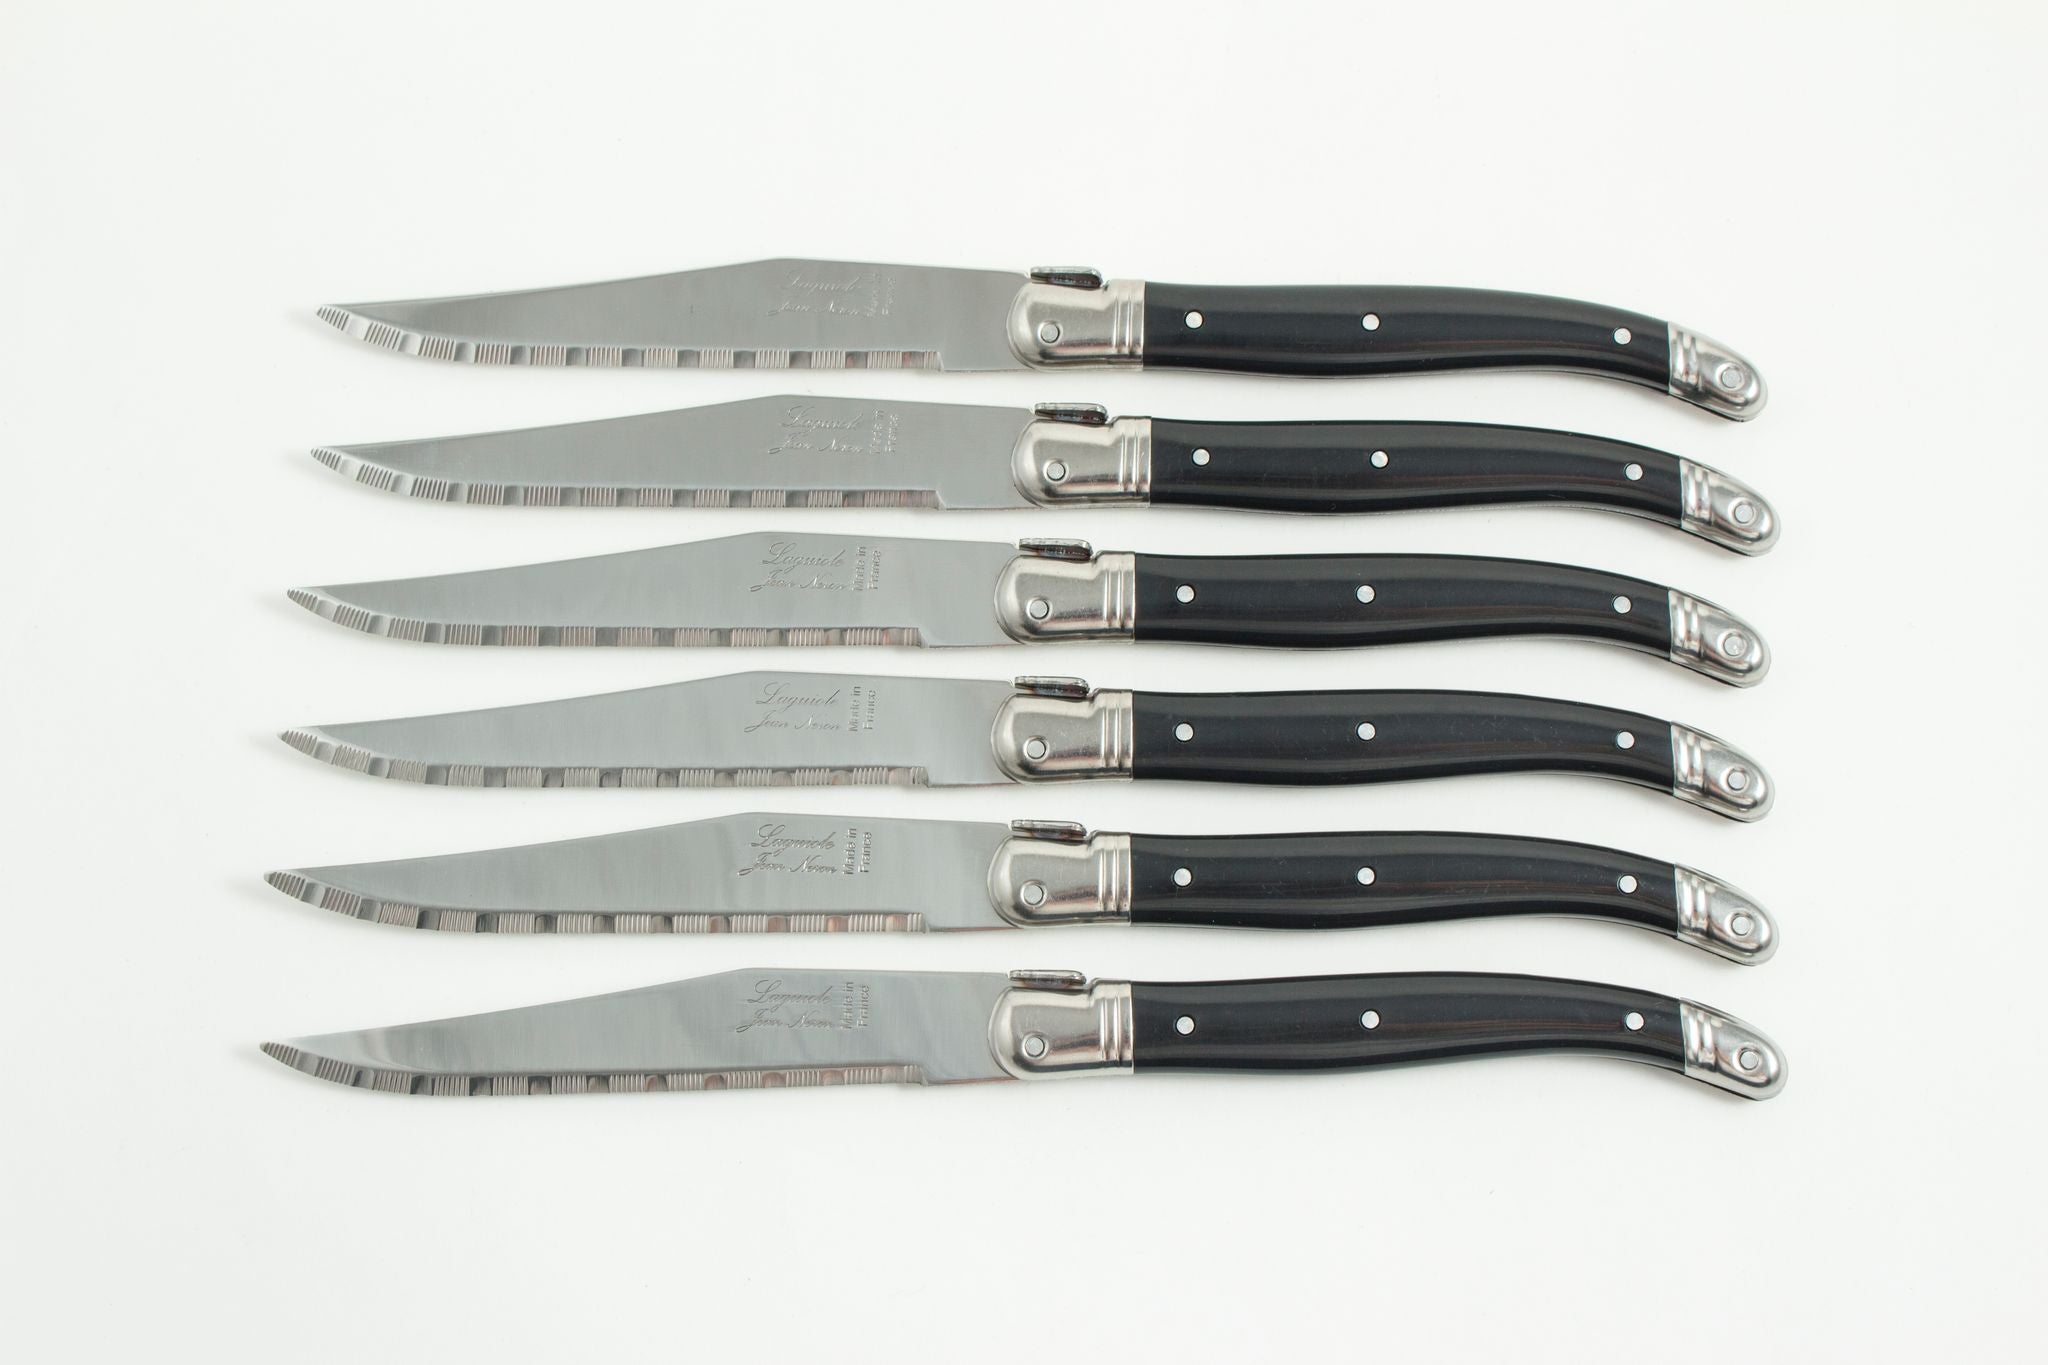 Black Laguiole Steak Knives